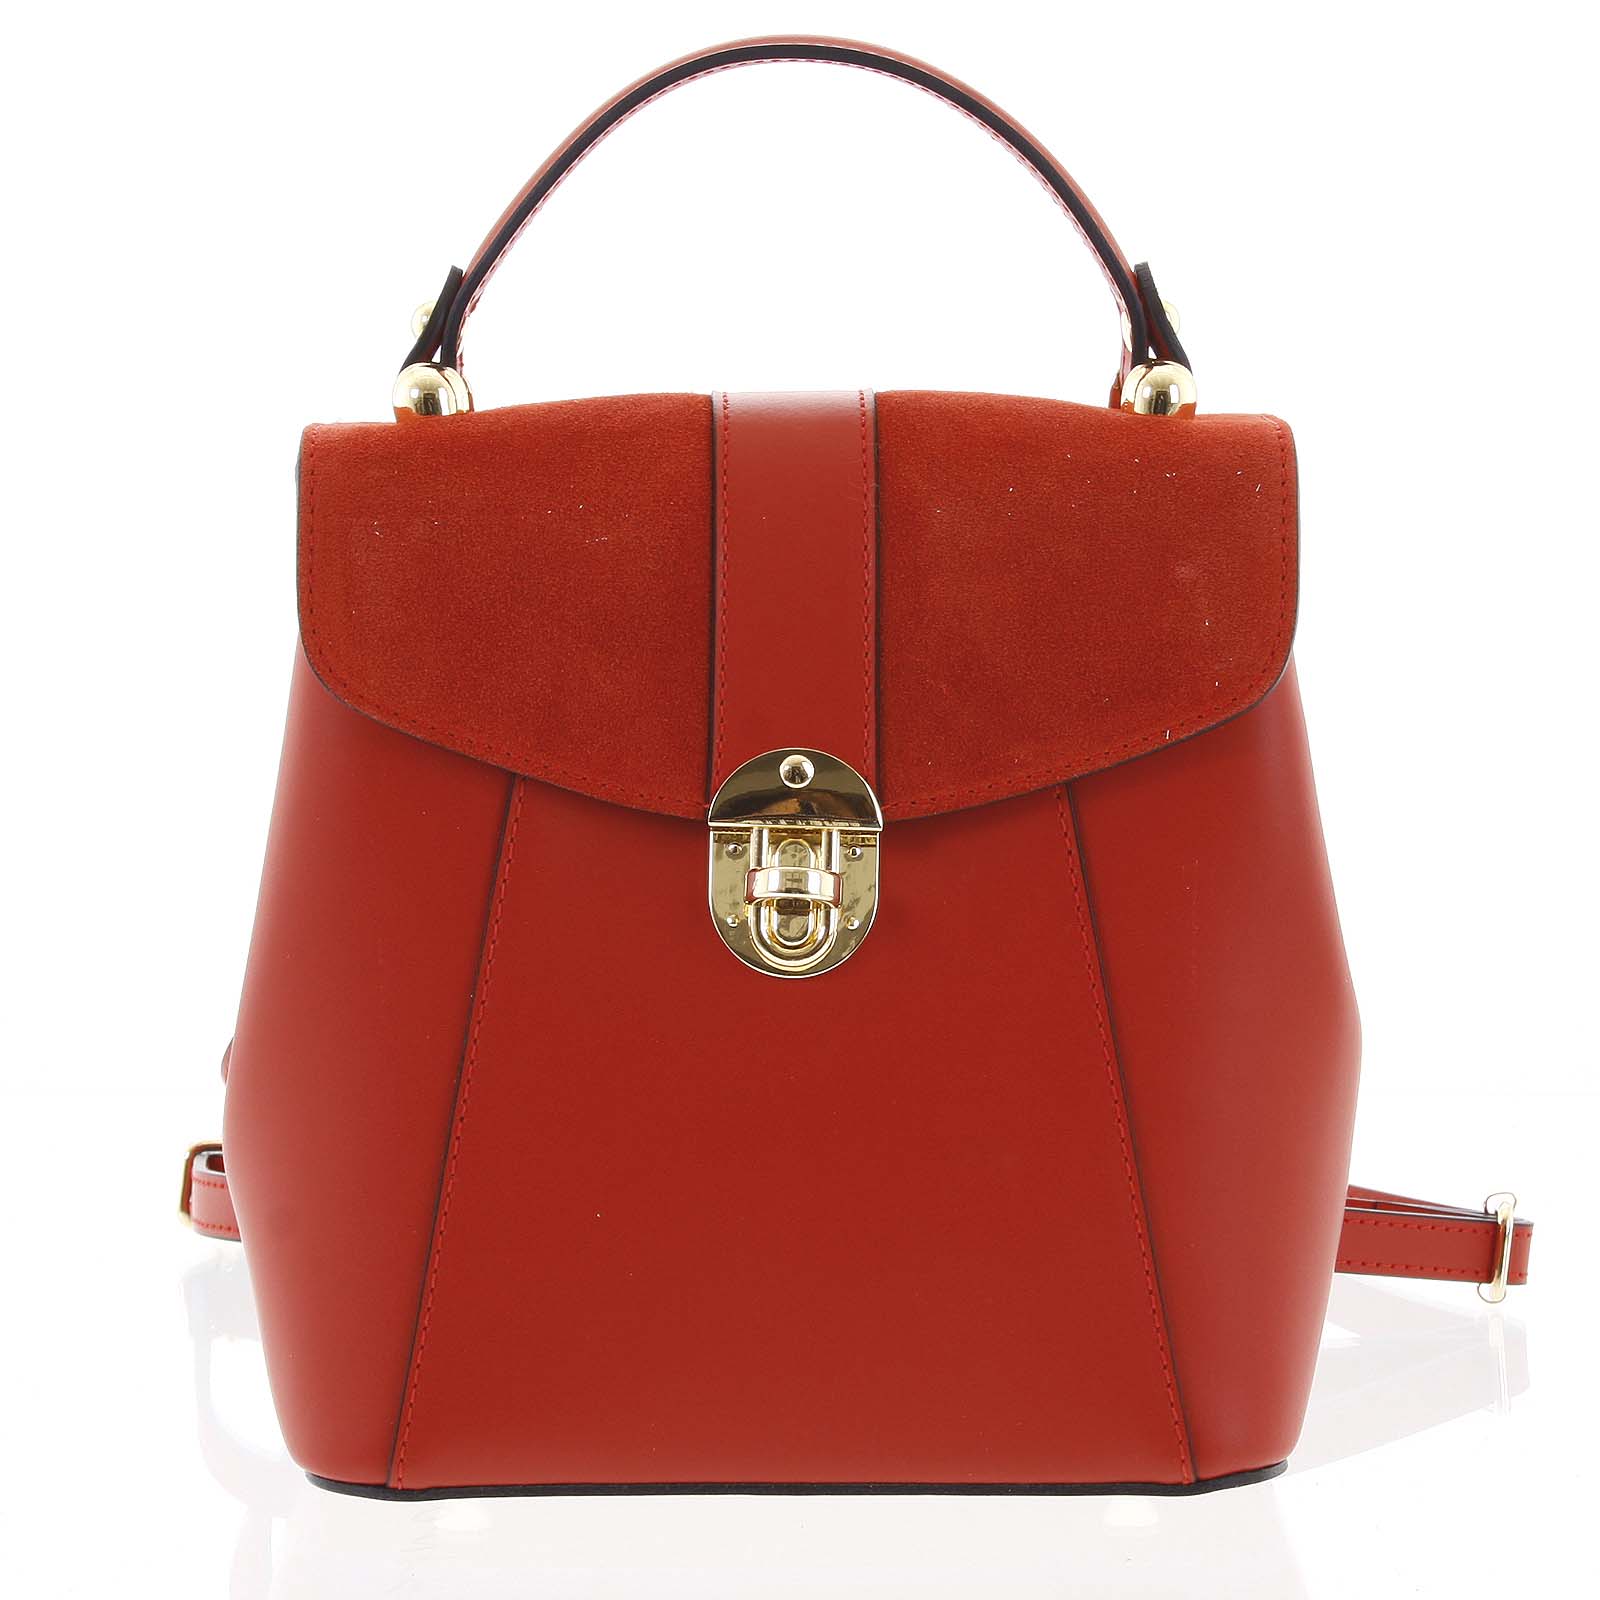 Dámský originální kožený červený batůžek kabelka - ItalY Acnes